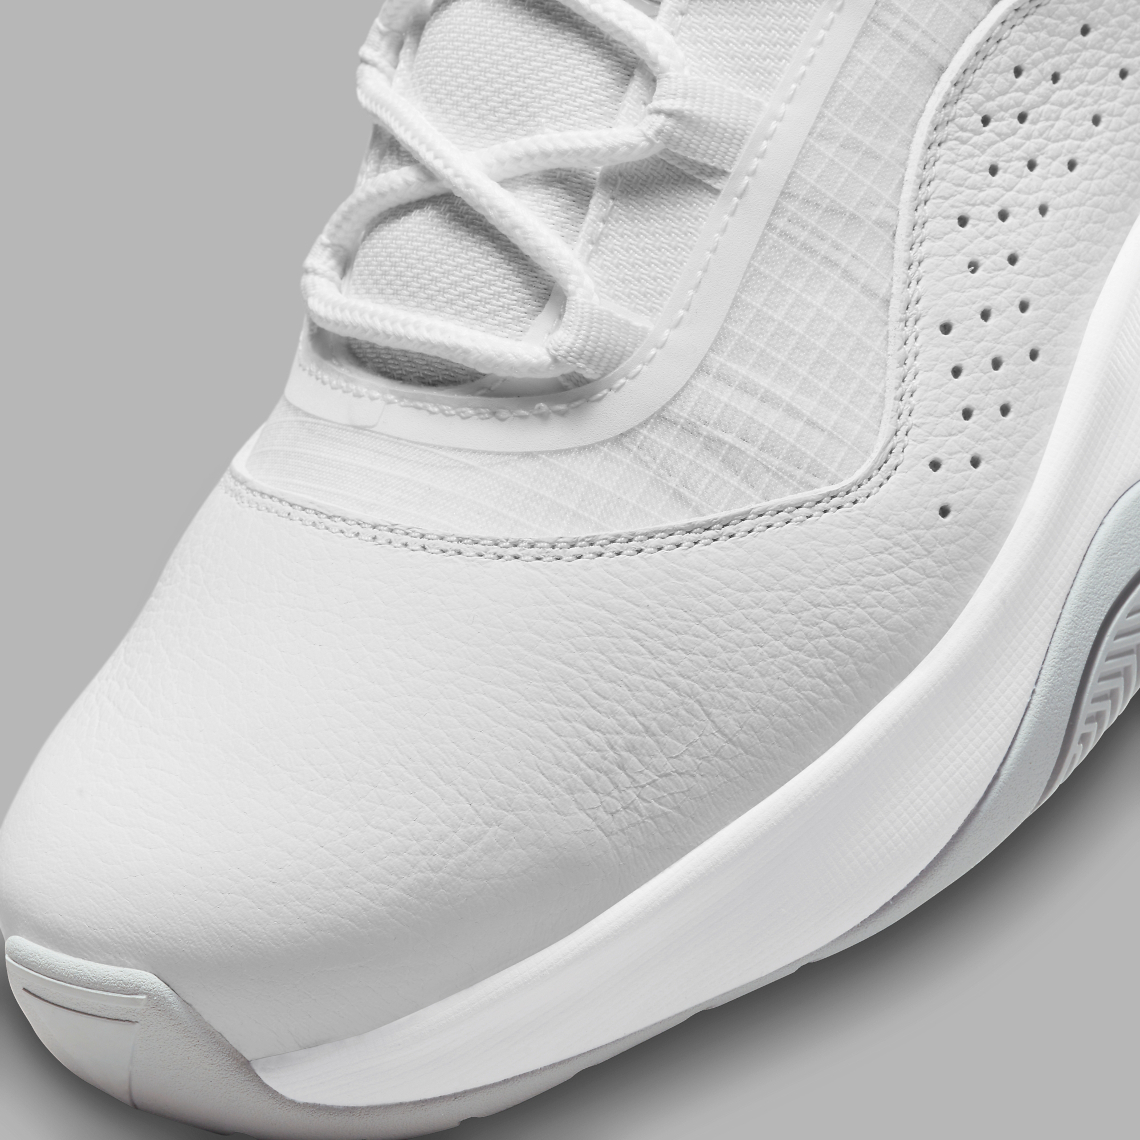 Air Jordan 11 CMFT Low White CW0784-101 Release | SneakerNews.com